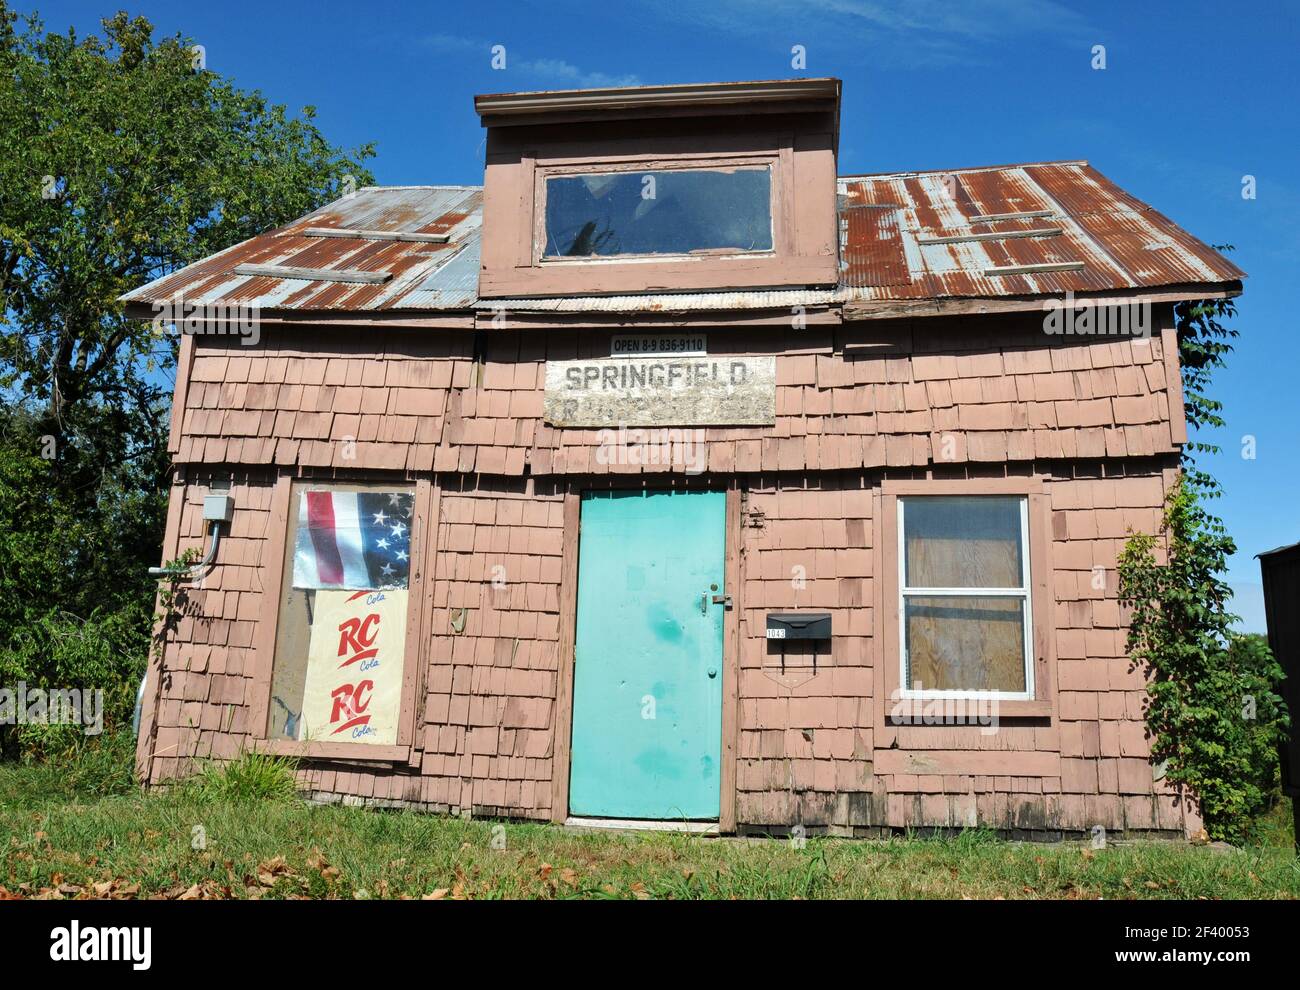 Una vecchia casa con un tetto di stagno arrugginita si trova sulla Route 66 a Springfield, Missouri. L'edificio è stato utilizzato come proprietà commerciale negli ultimi anni. Foto Stock